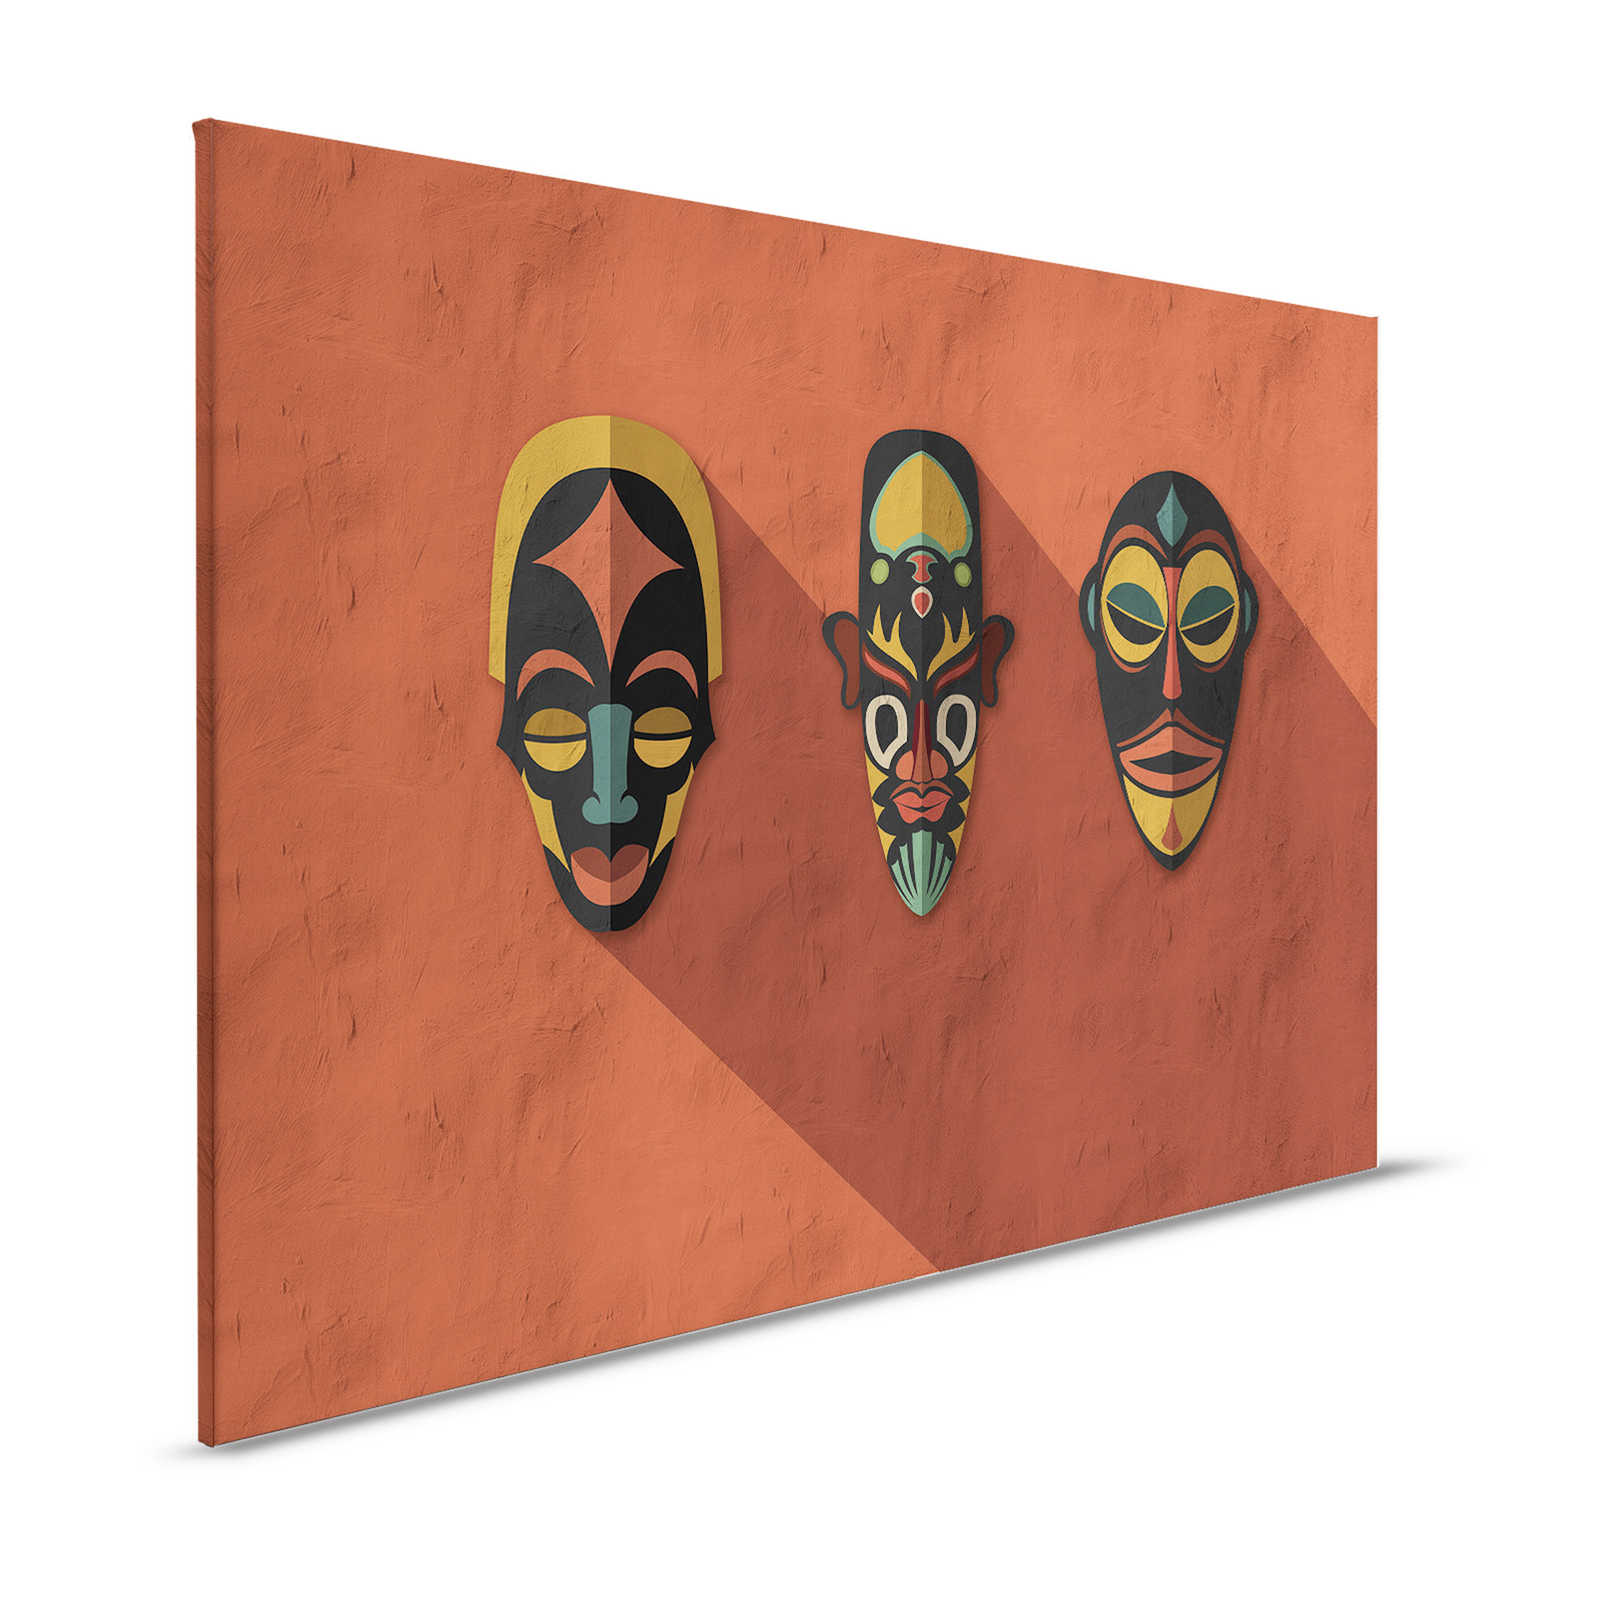 Zulu 2 - Quadro su tela Terracotta Arancione, Africa Masks Zulu Design - 1,20 m x 0,80 m
